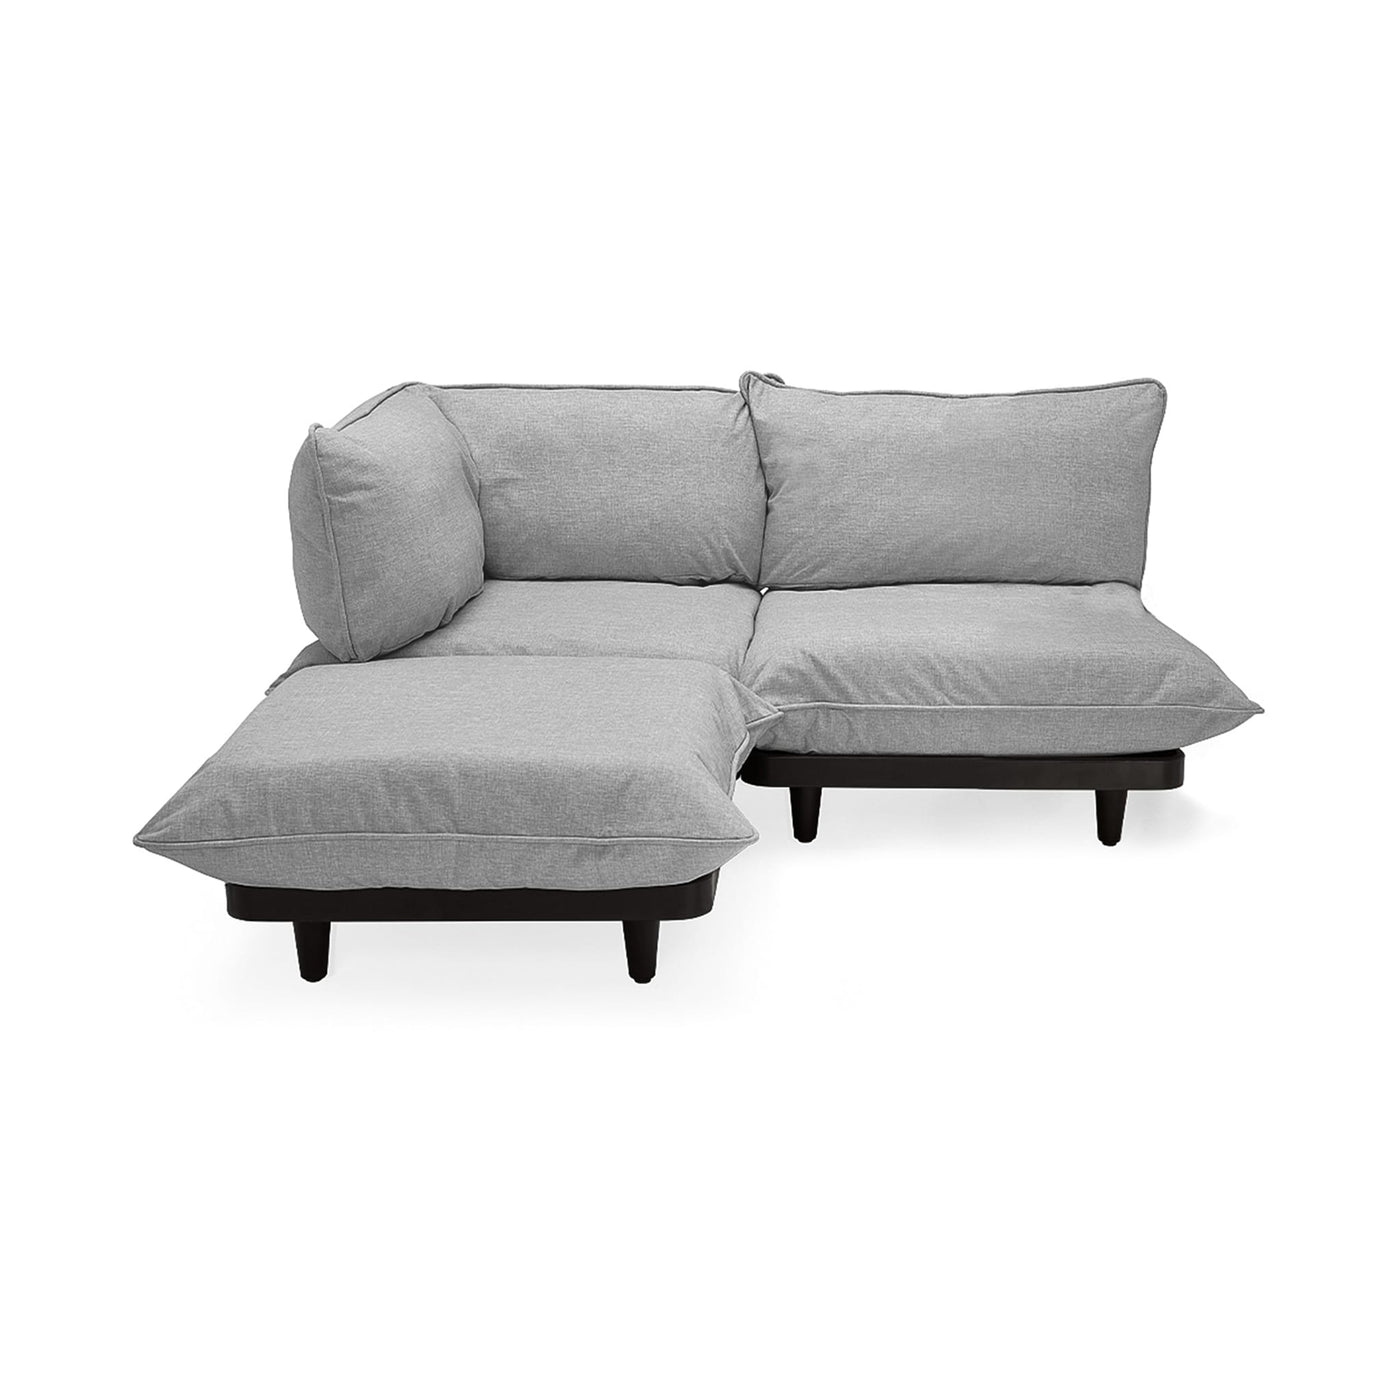 Rehaussez votre espace extérieur avec le sofa sectionnel Paletti de Fatboy, adaptable et robuste. Gris pierre